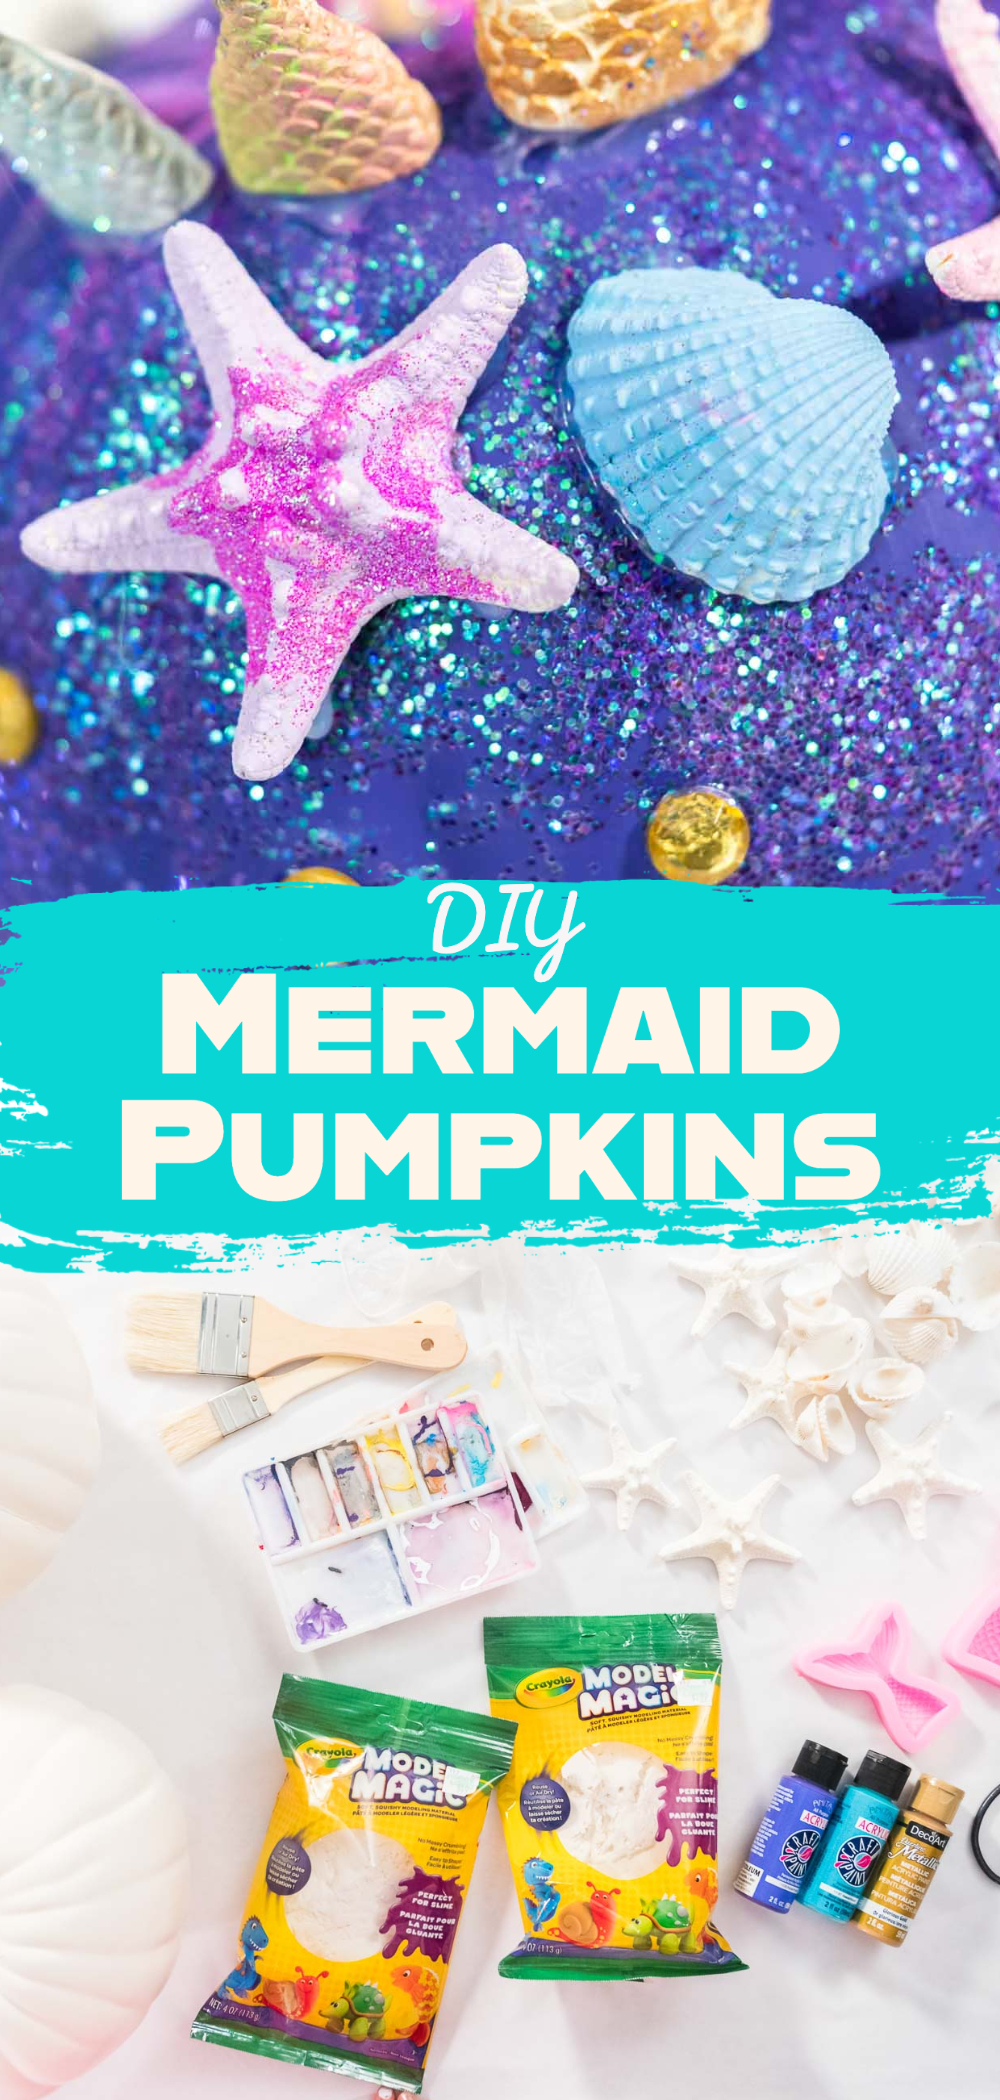 DIY Mermaid Pumpkins